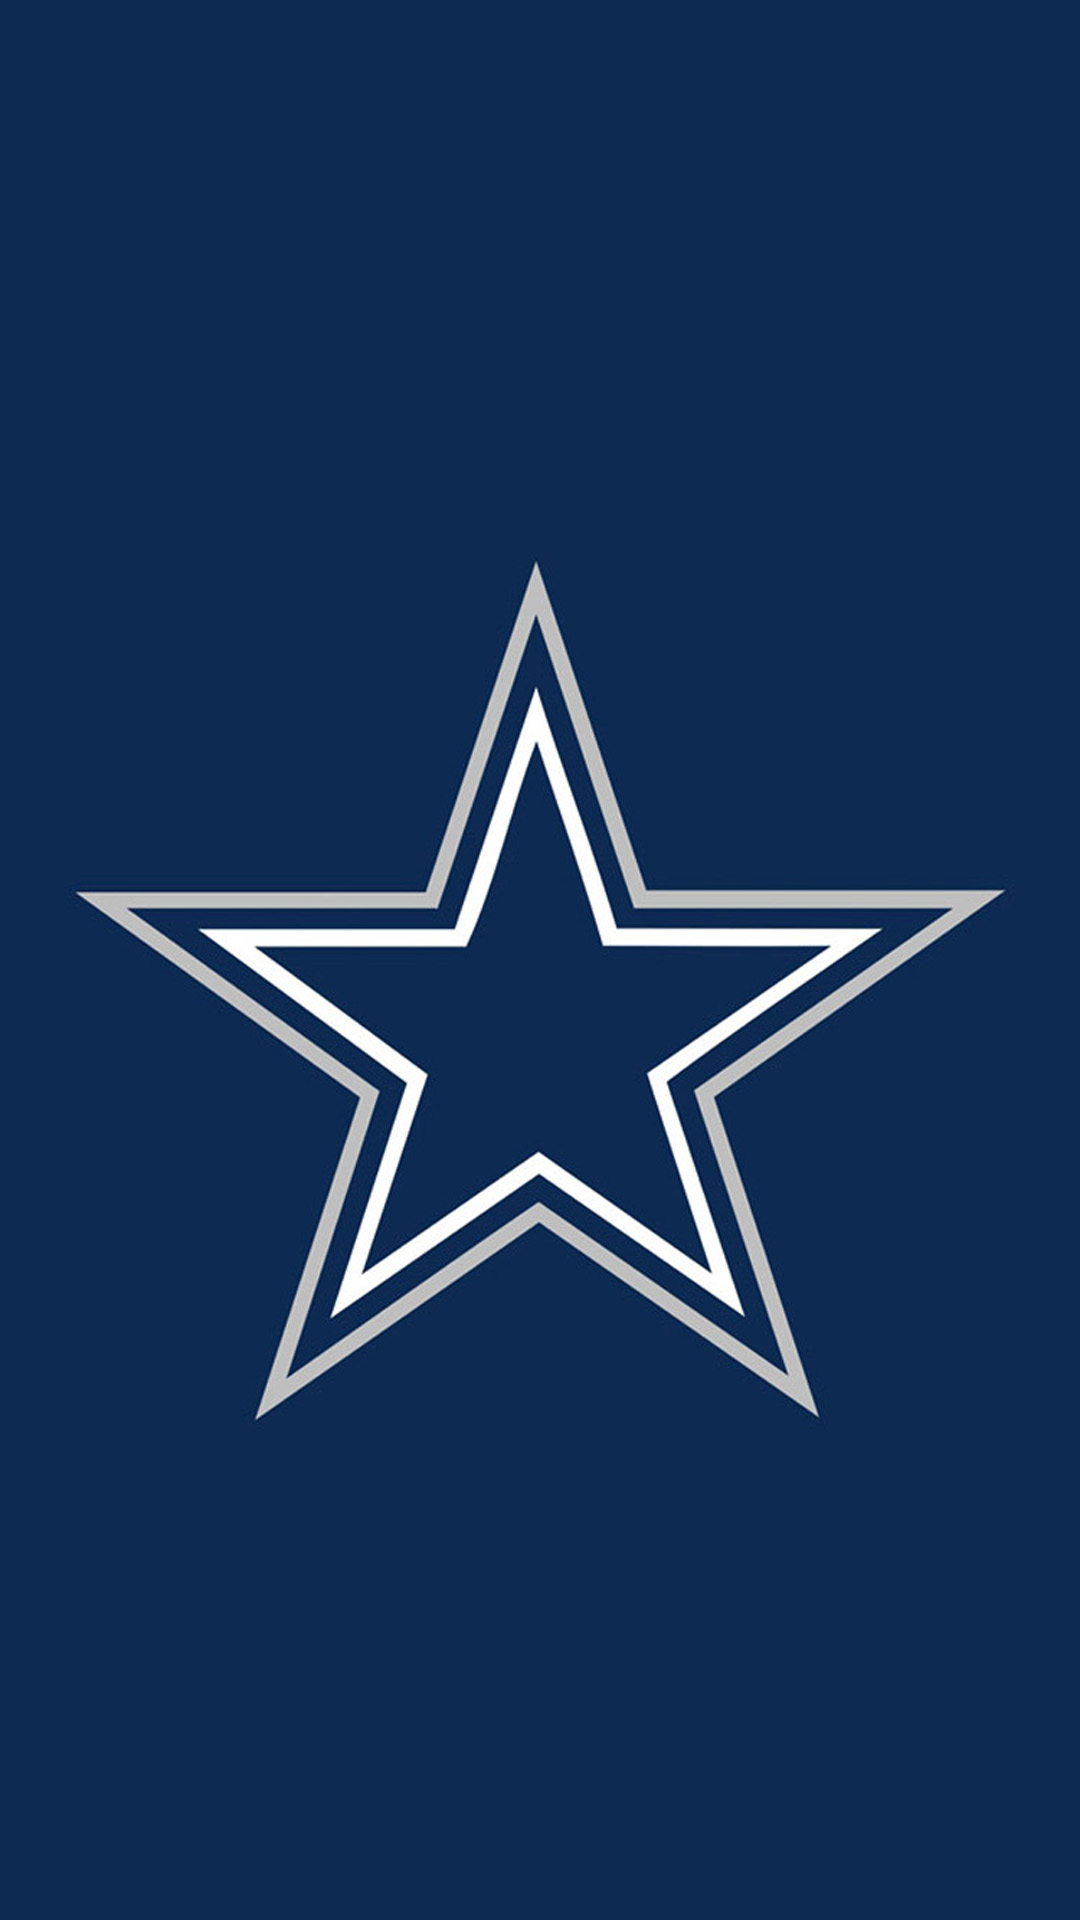 Dallas Cowboys iPhone Wallpaper Airwallpaper